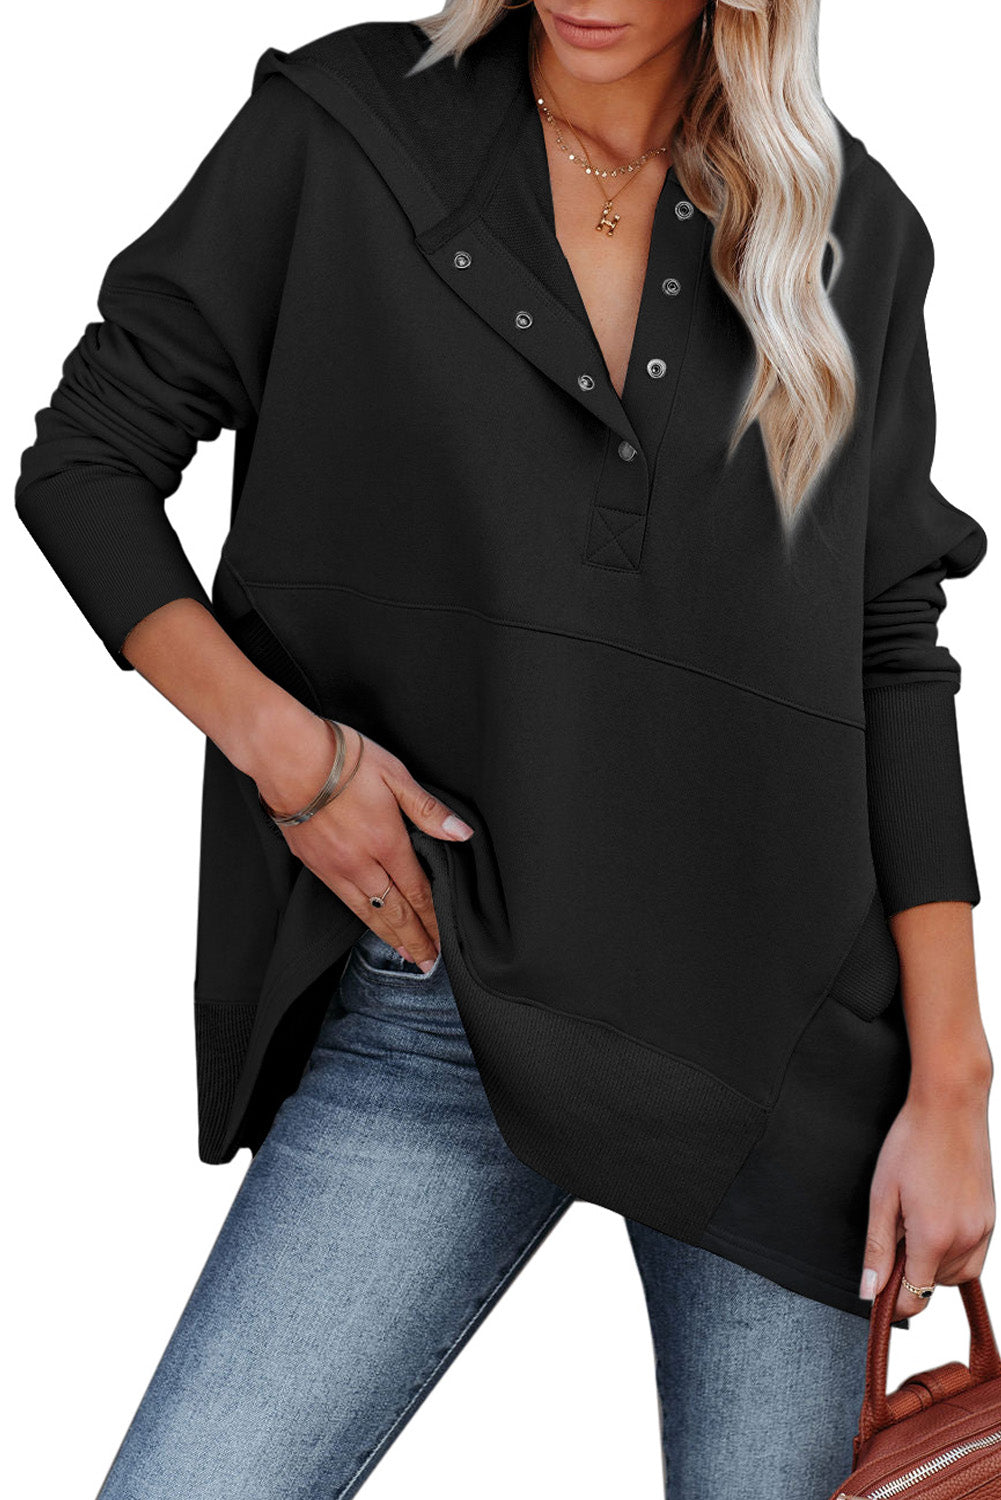 Crna Henley majica s kapuljačom s rukavima u obliku krila šišmiša